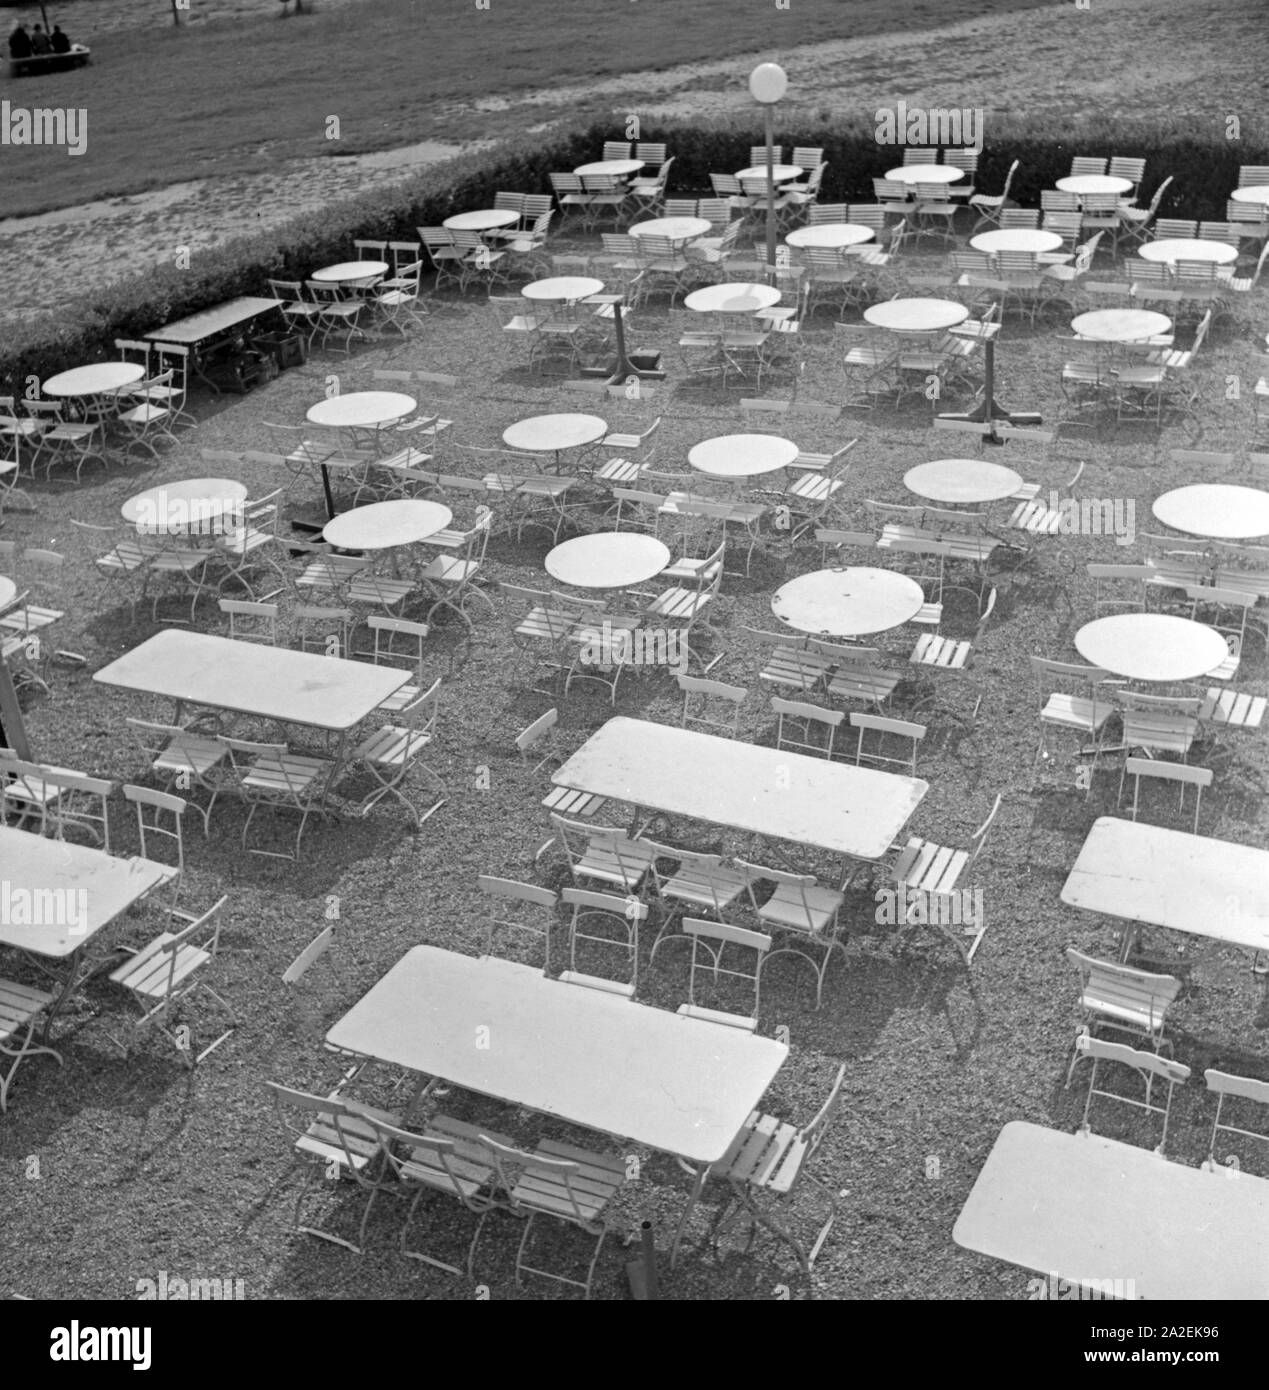 Tische und Stühle einer Außengastronomie bei Schloss Solitude in Stuttgart, Deutschland, 1930er Jahre. Tische und Stühle an ein Open air Restaurant auf Schloss Solitude bei Stuttgart, Deutschland 1930. Stockfoto